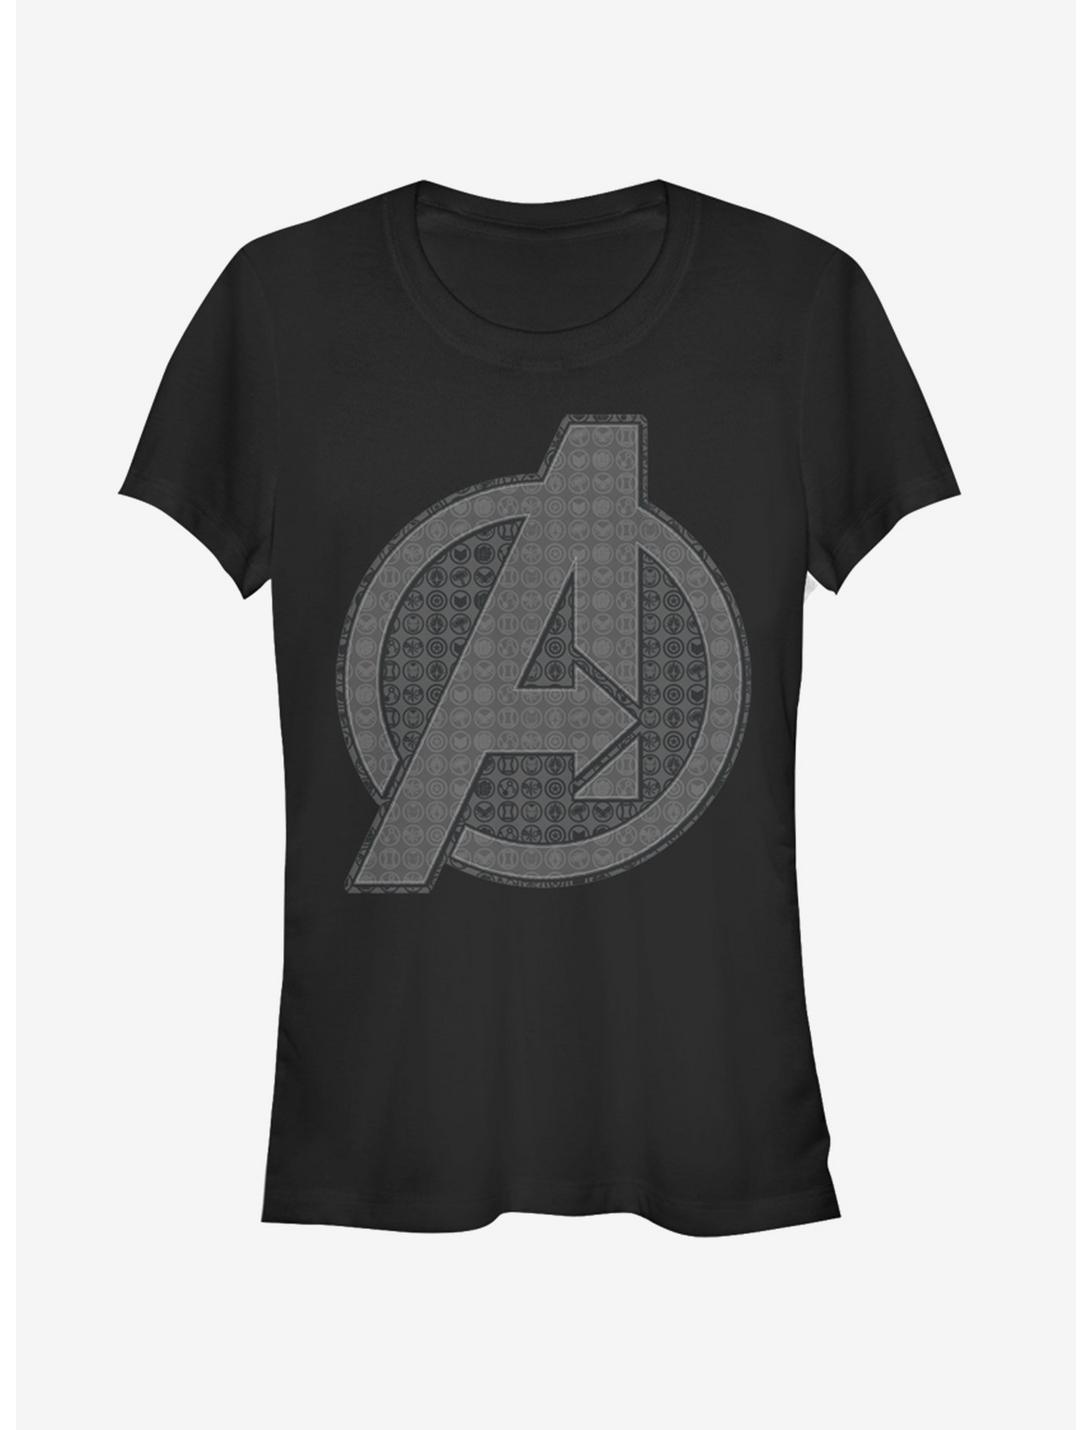 Marvel Avengers: Endgame Grayscale Logo Girls T-Shirt, BLACK, hi-res